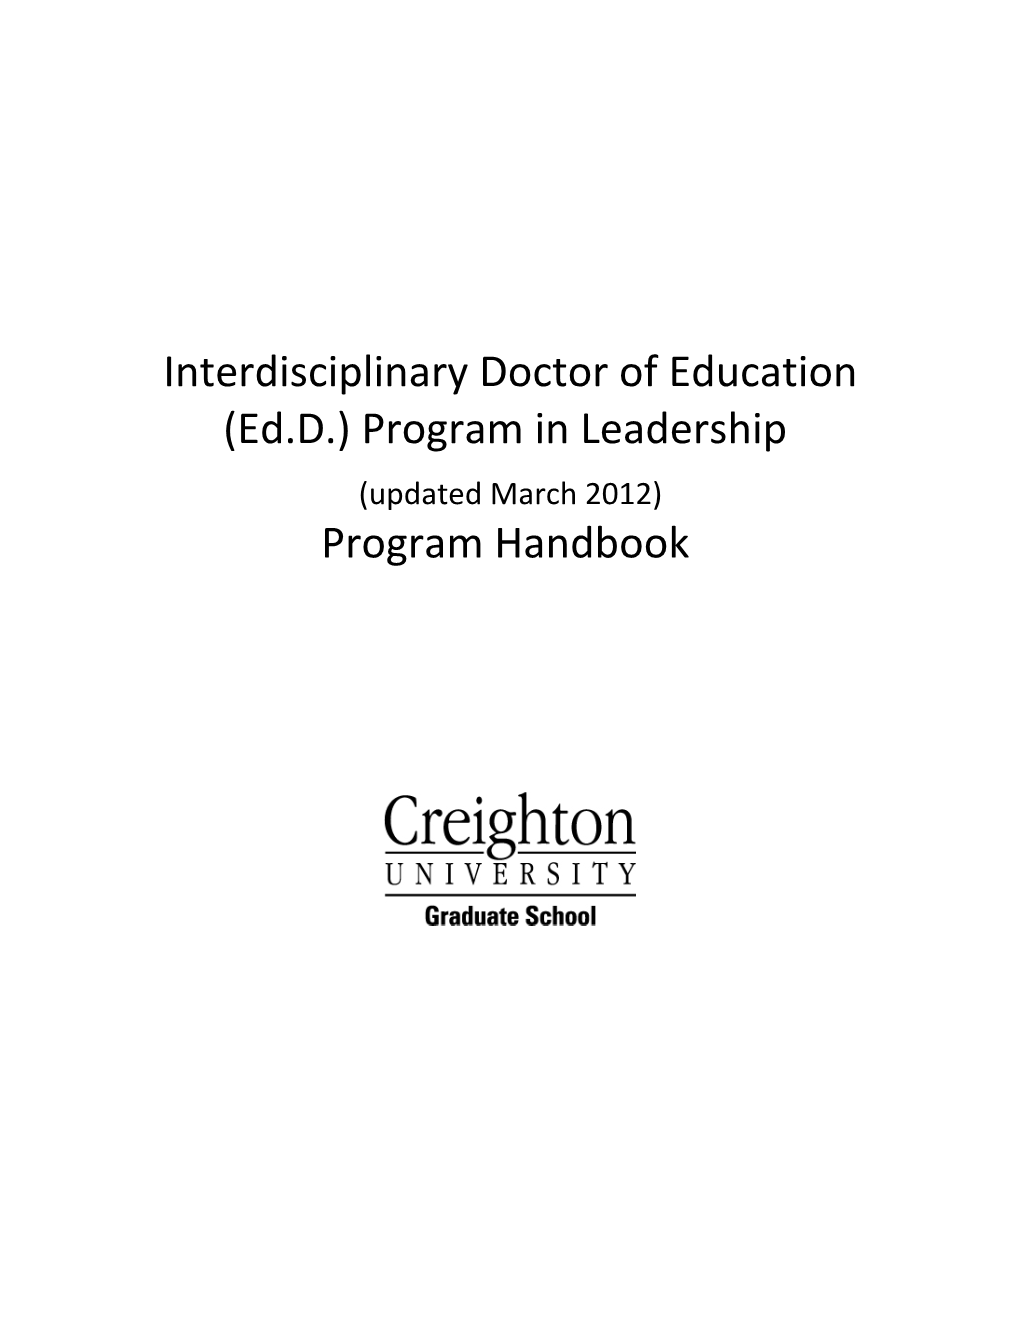 Interdisciplinary Doctor of Education (Ed.D.) Program in Leadership